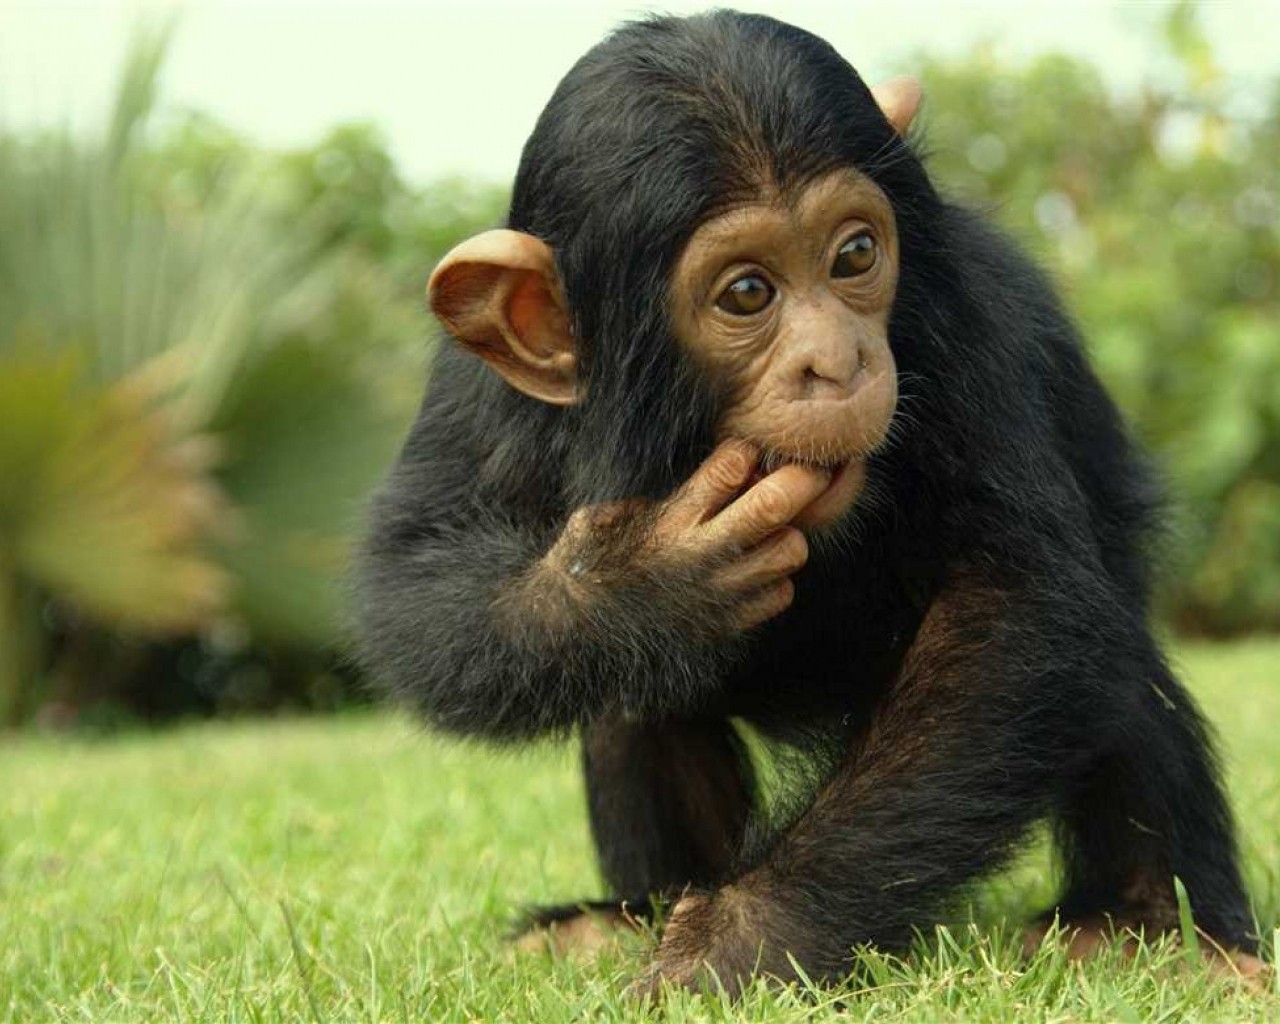 Описание самых удивительных черт обезьян - их интеллект, поведение и необычные способности